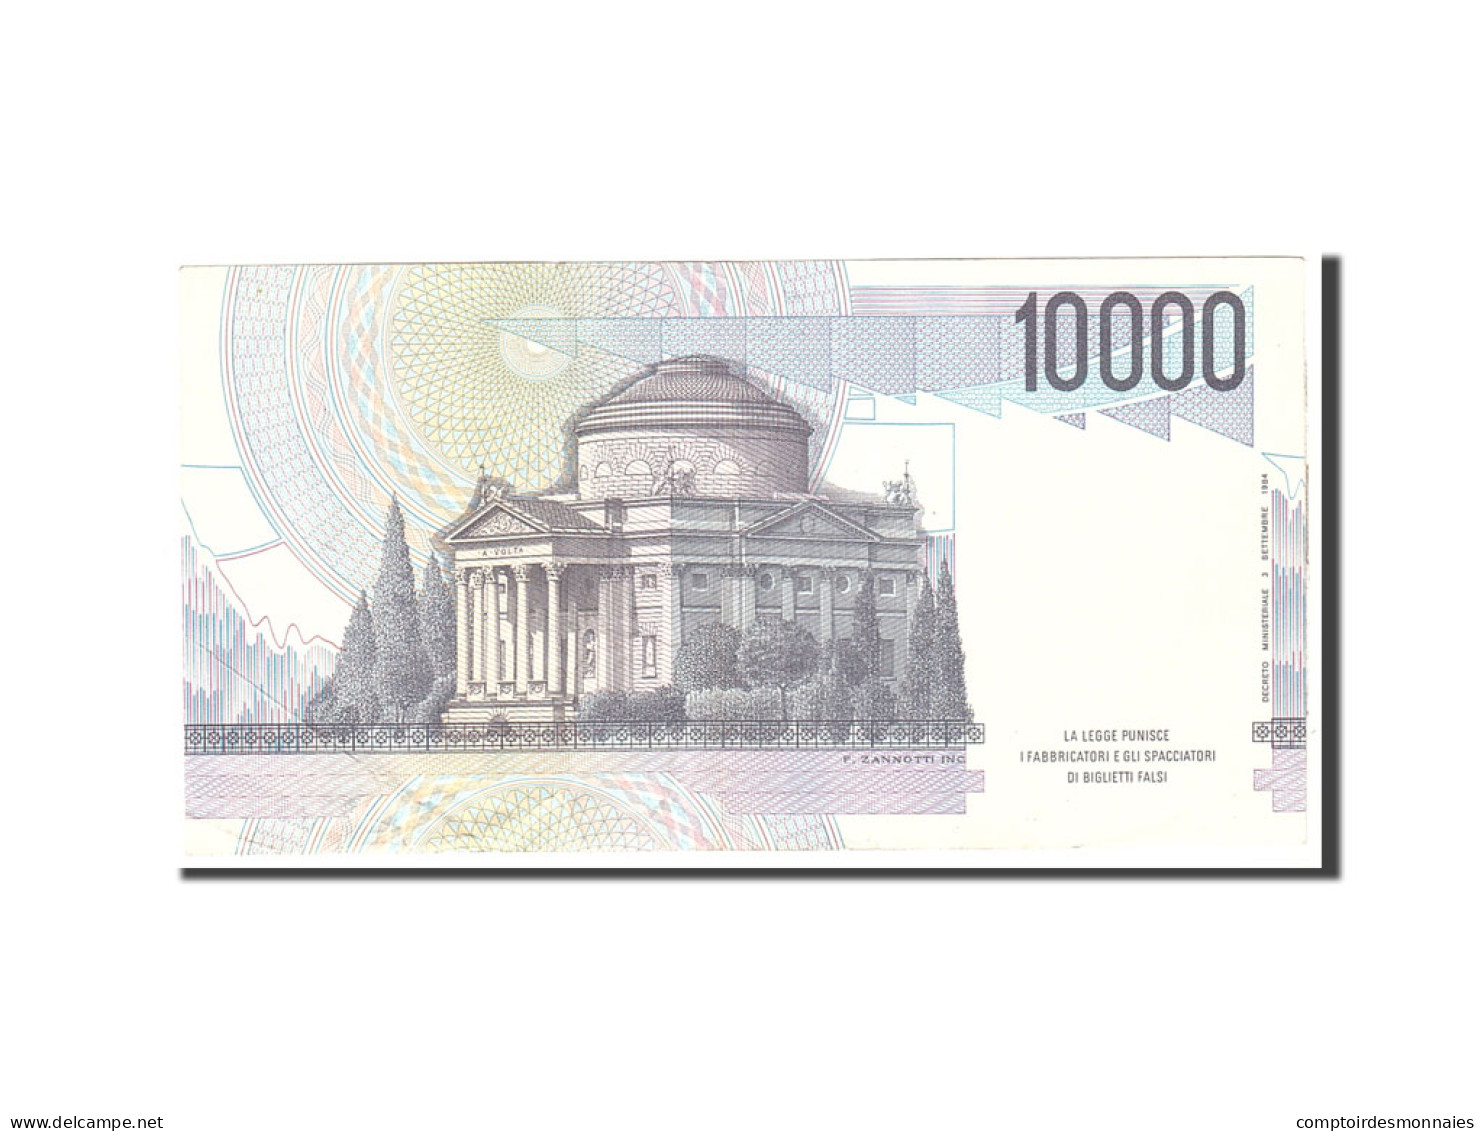 Billet, Italie, 10,000 Lire, 1984, 1984-09-03, KM:112b, TTB+ - 10000 Lire